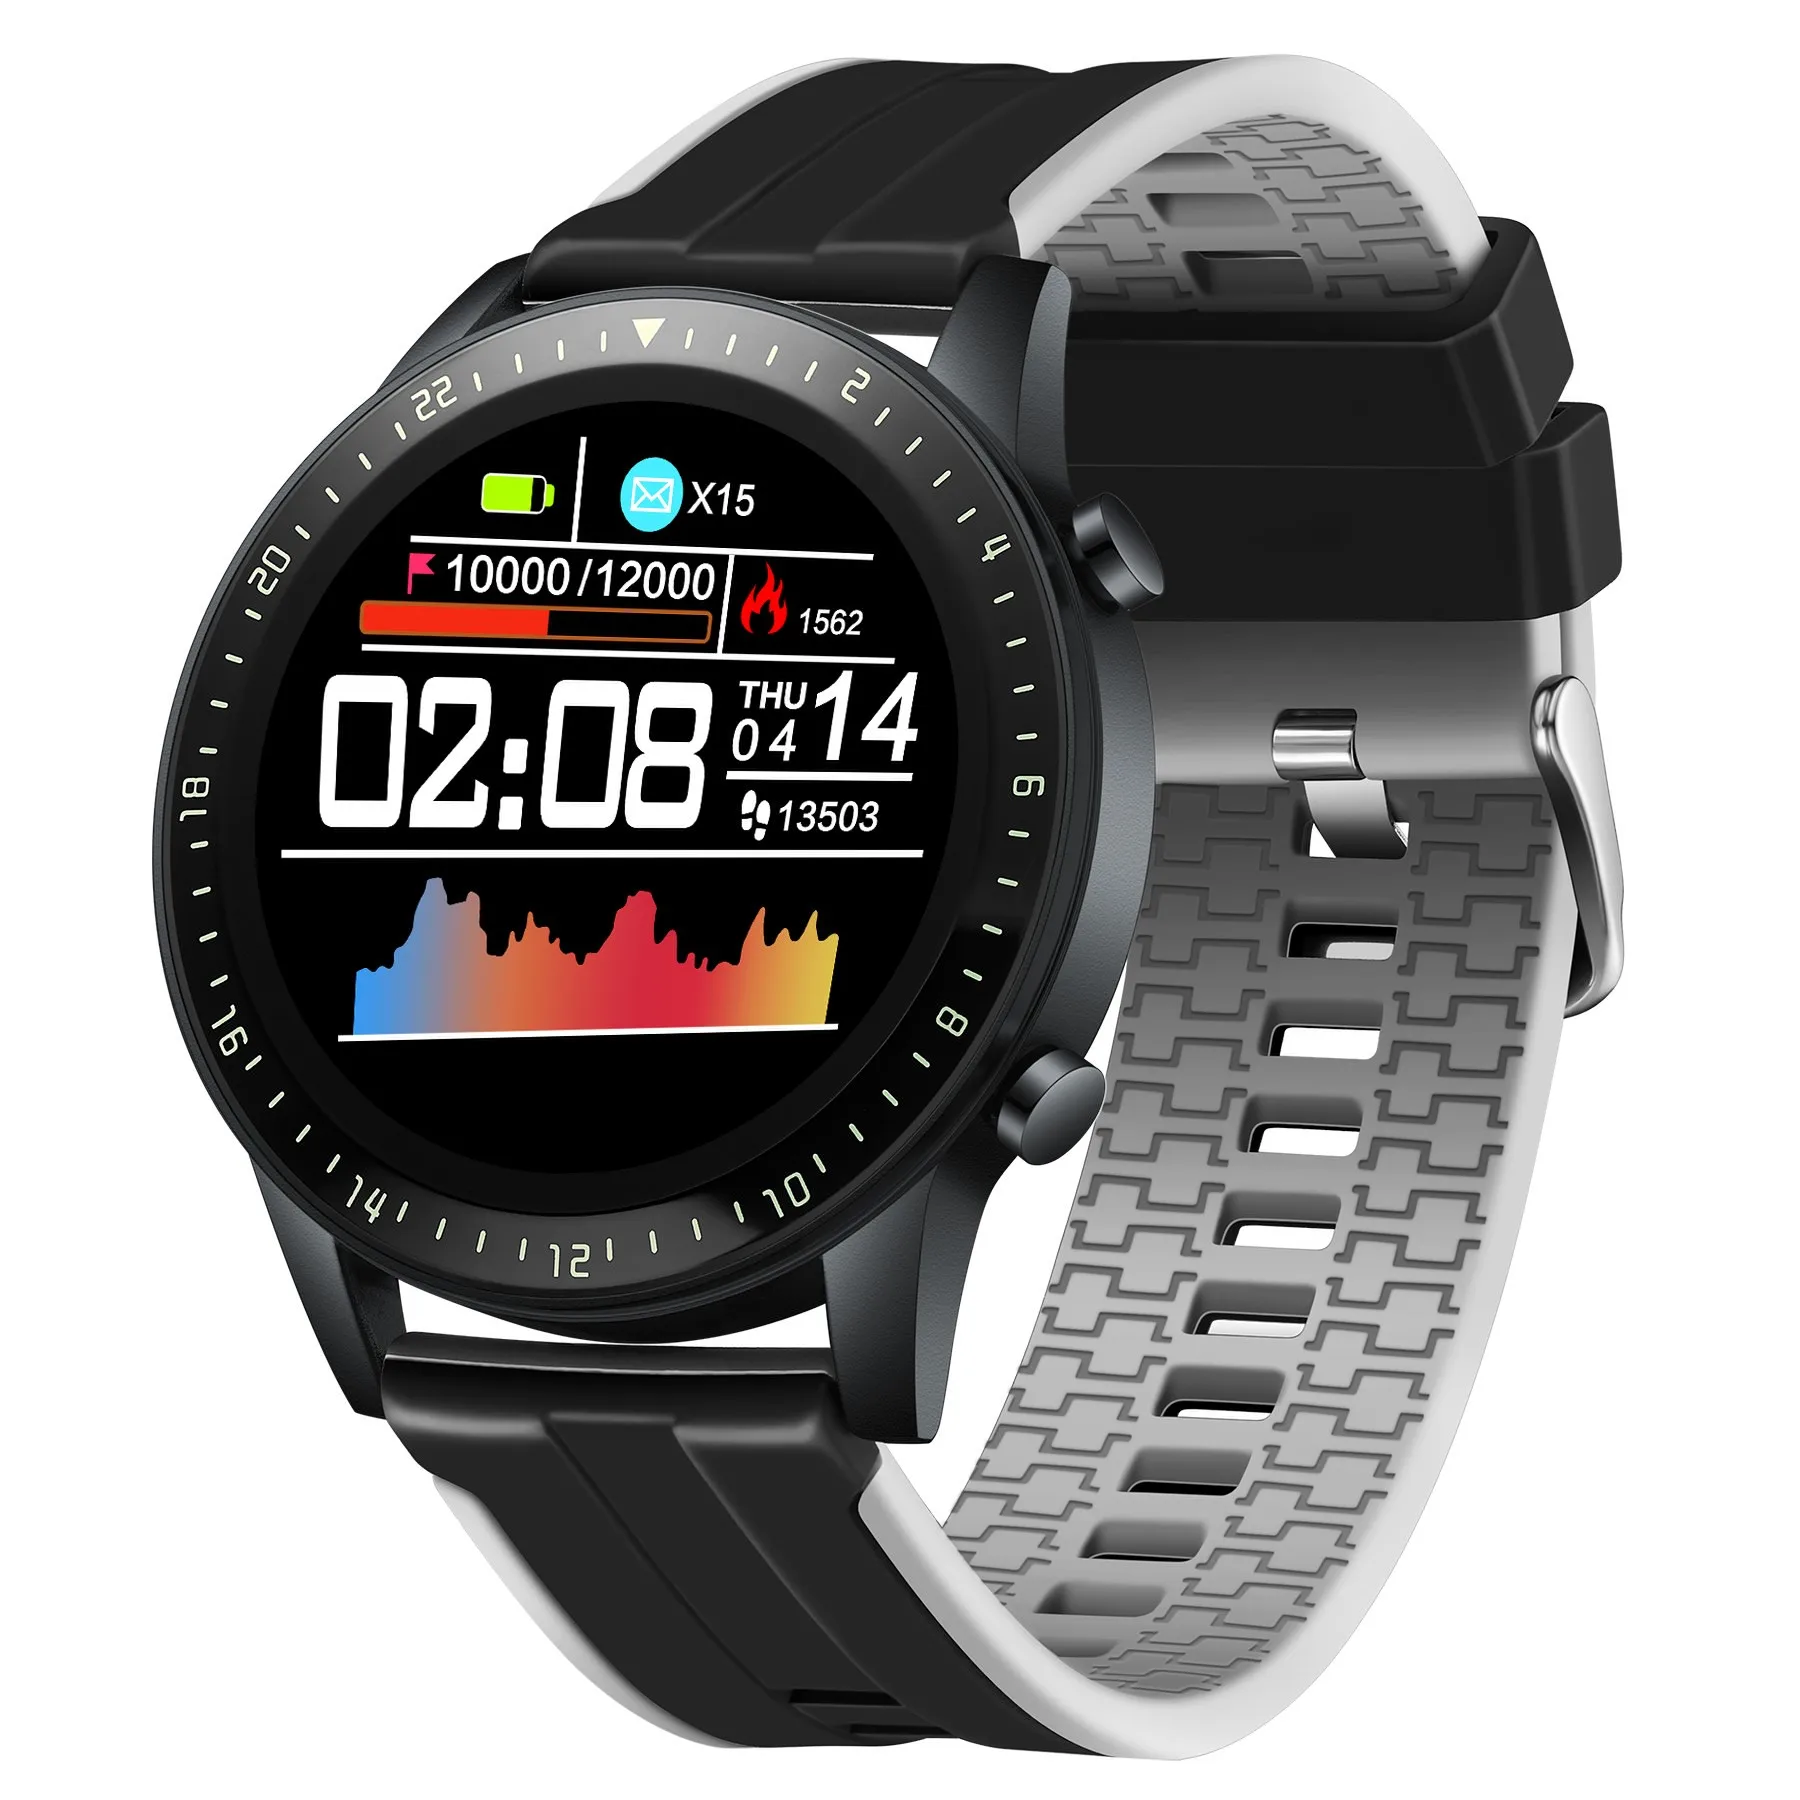 

KOKO Z12 Smart Watch Men Women for Android IOS Phone Waterproof Heart Rate Tracker Sport Smartwatch, Black silver rosegold